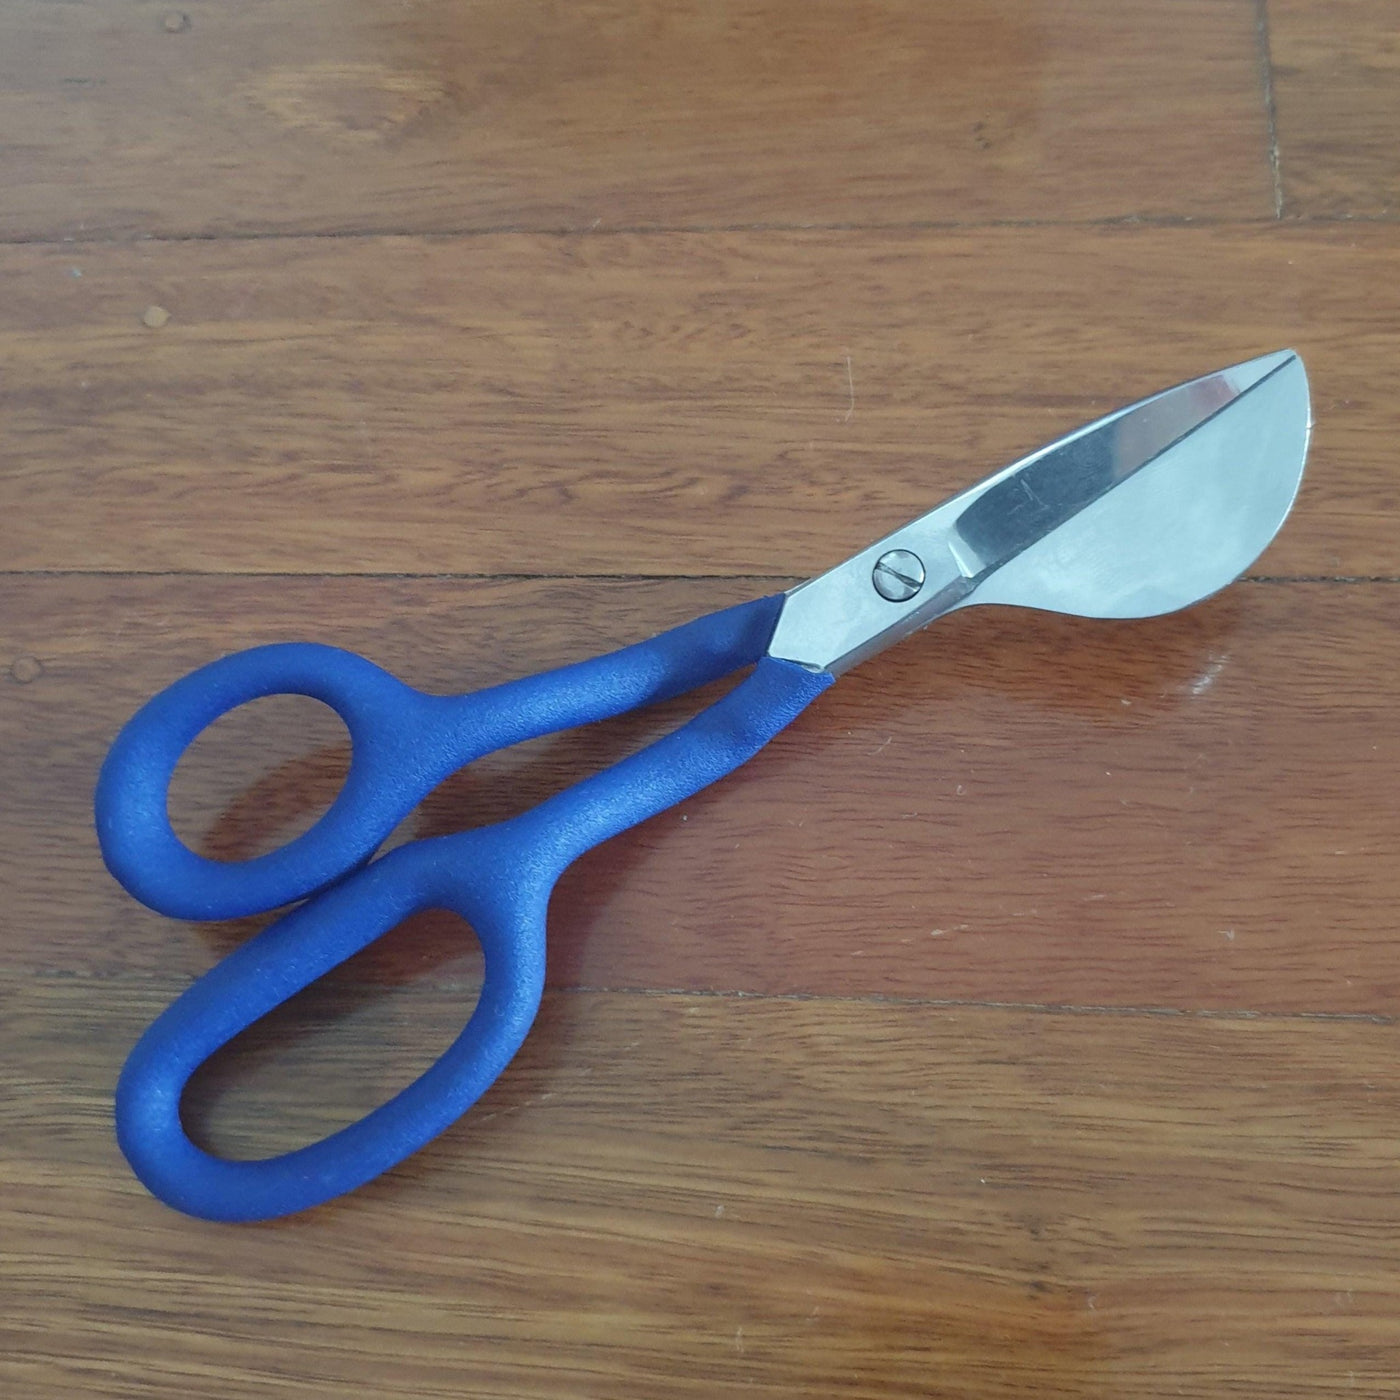 Duckbill scissors for tufting - rug making scissors